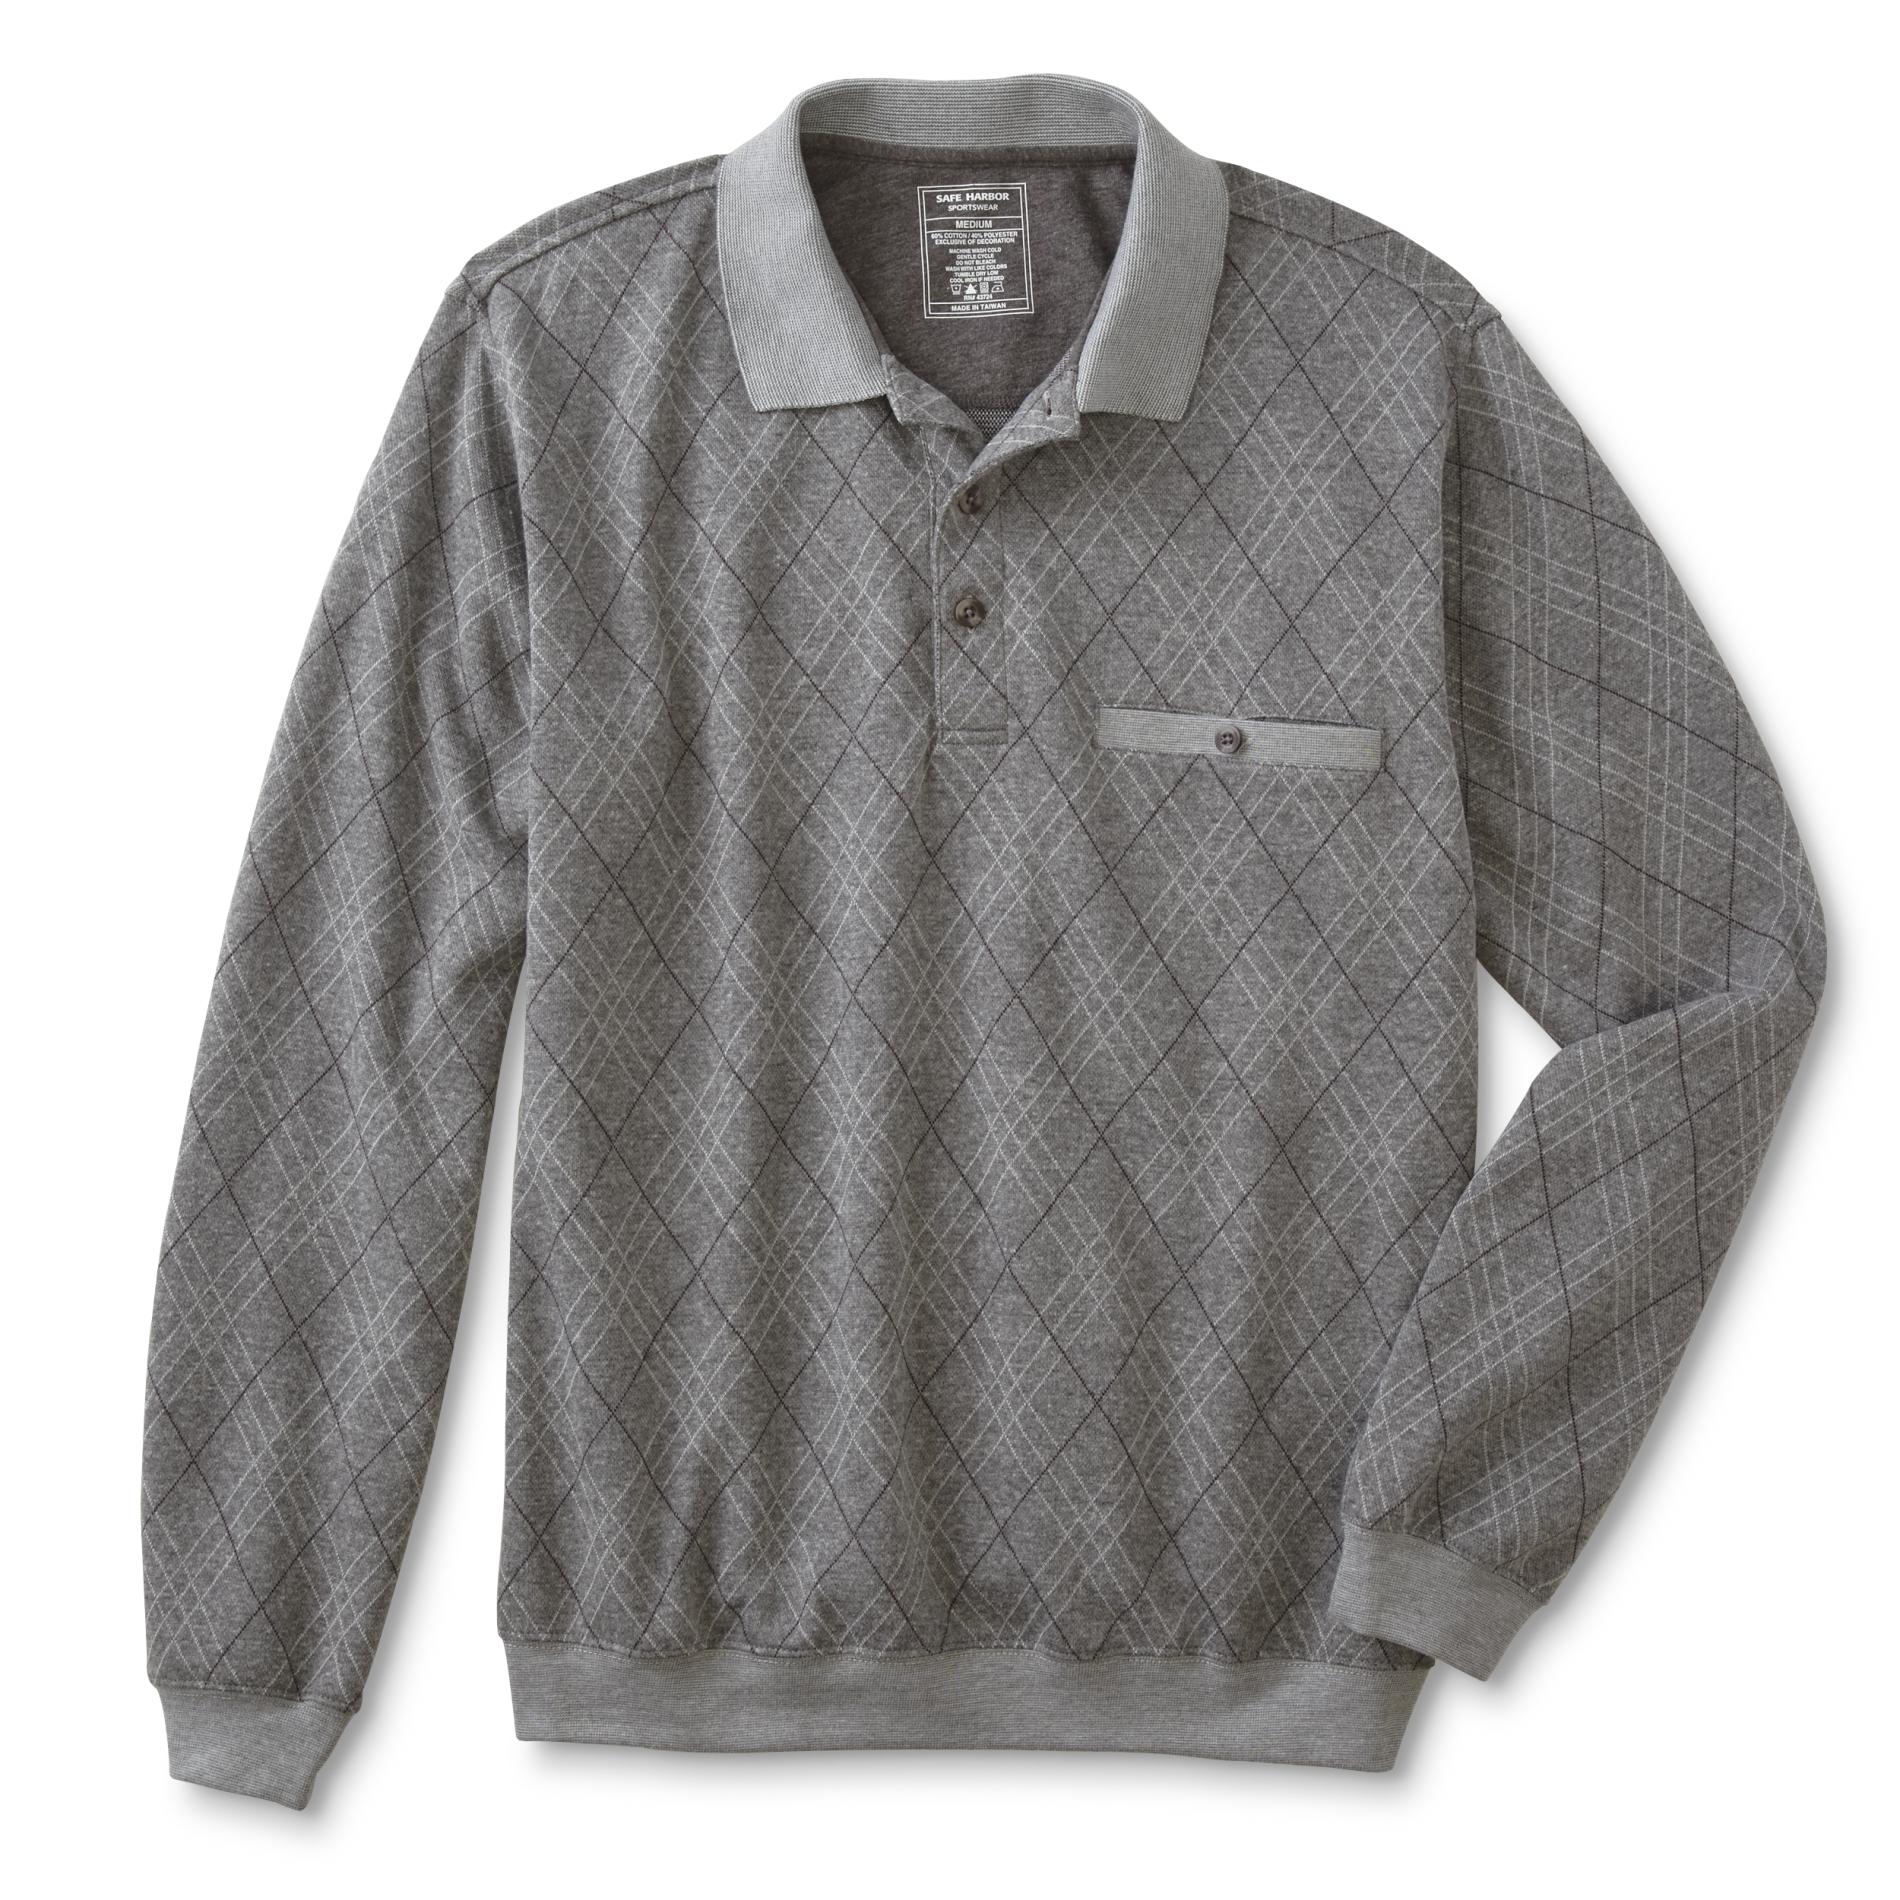 David Taylor Collection Men's Long-Sleeve Polo Shirt - Argyle